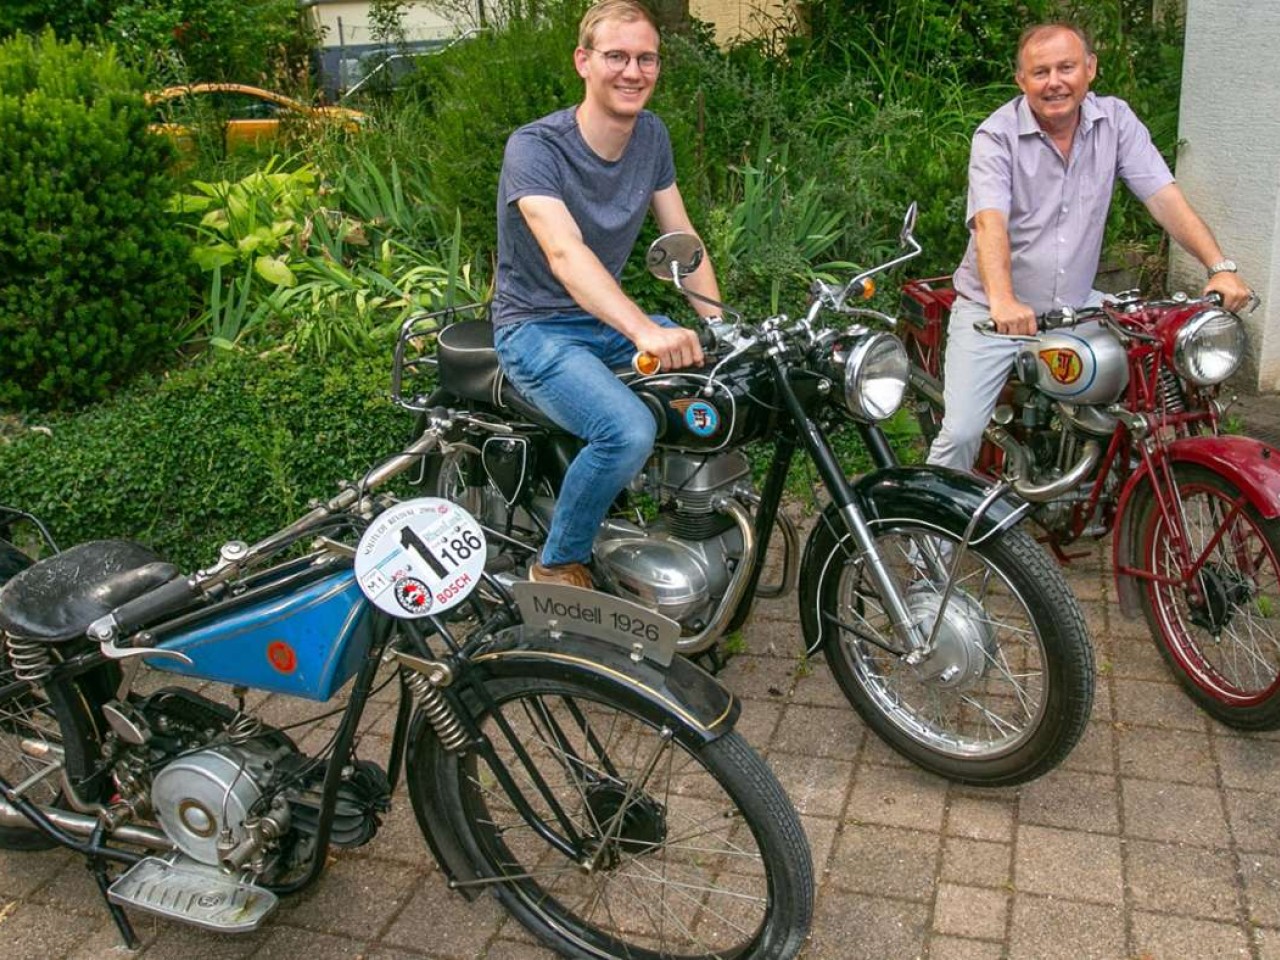 Kultmotorrad UT aus Untertürkheim: Zwei Esslinger polieren 100 Jahre alte Motorradmarke wieder auf